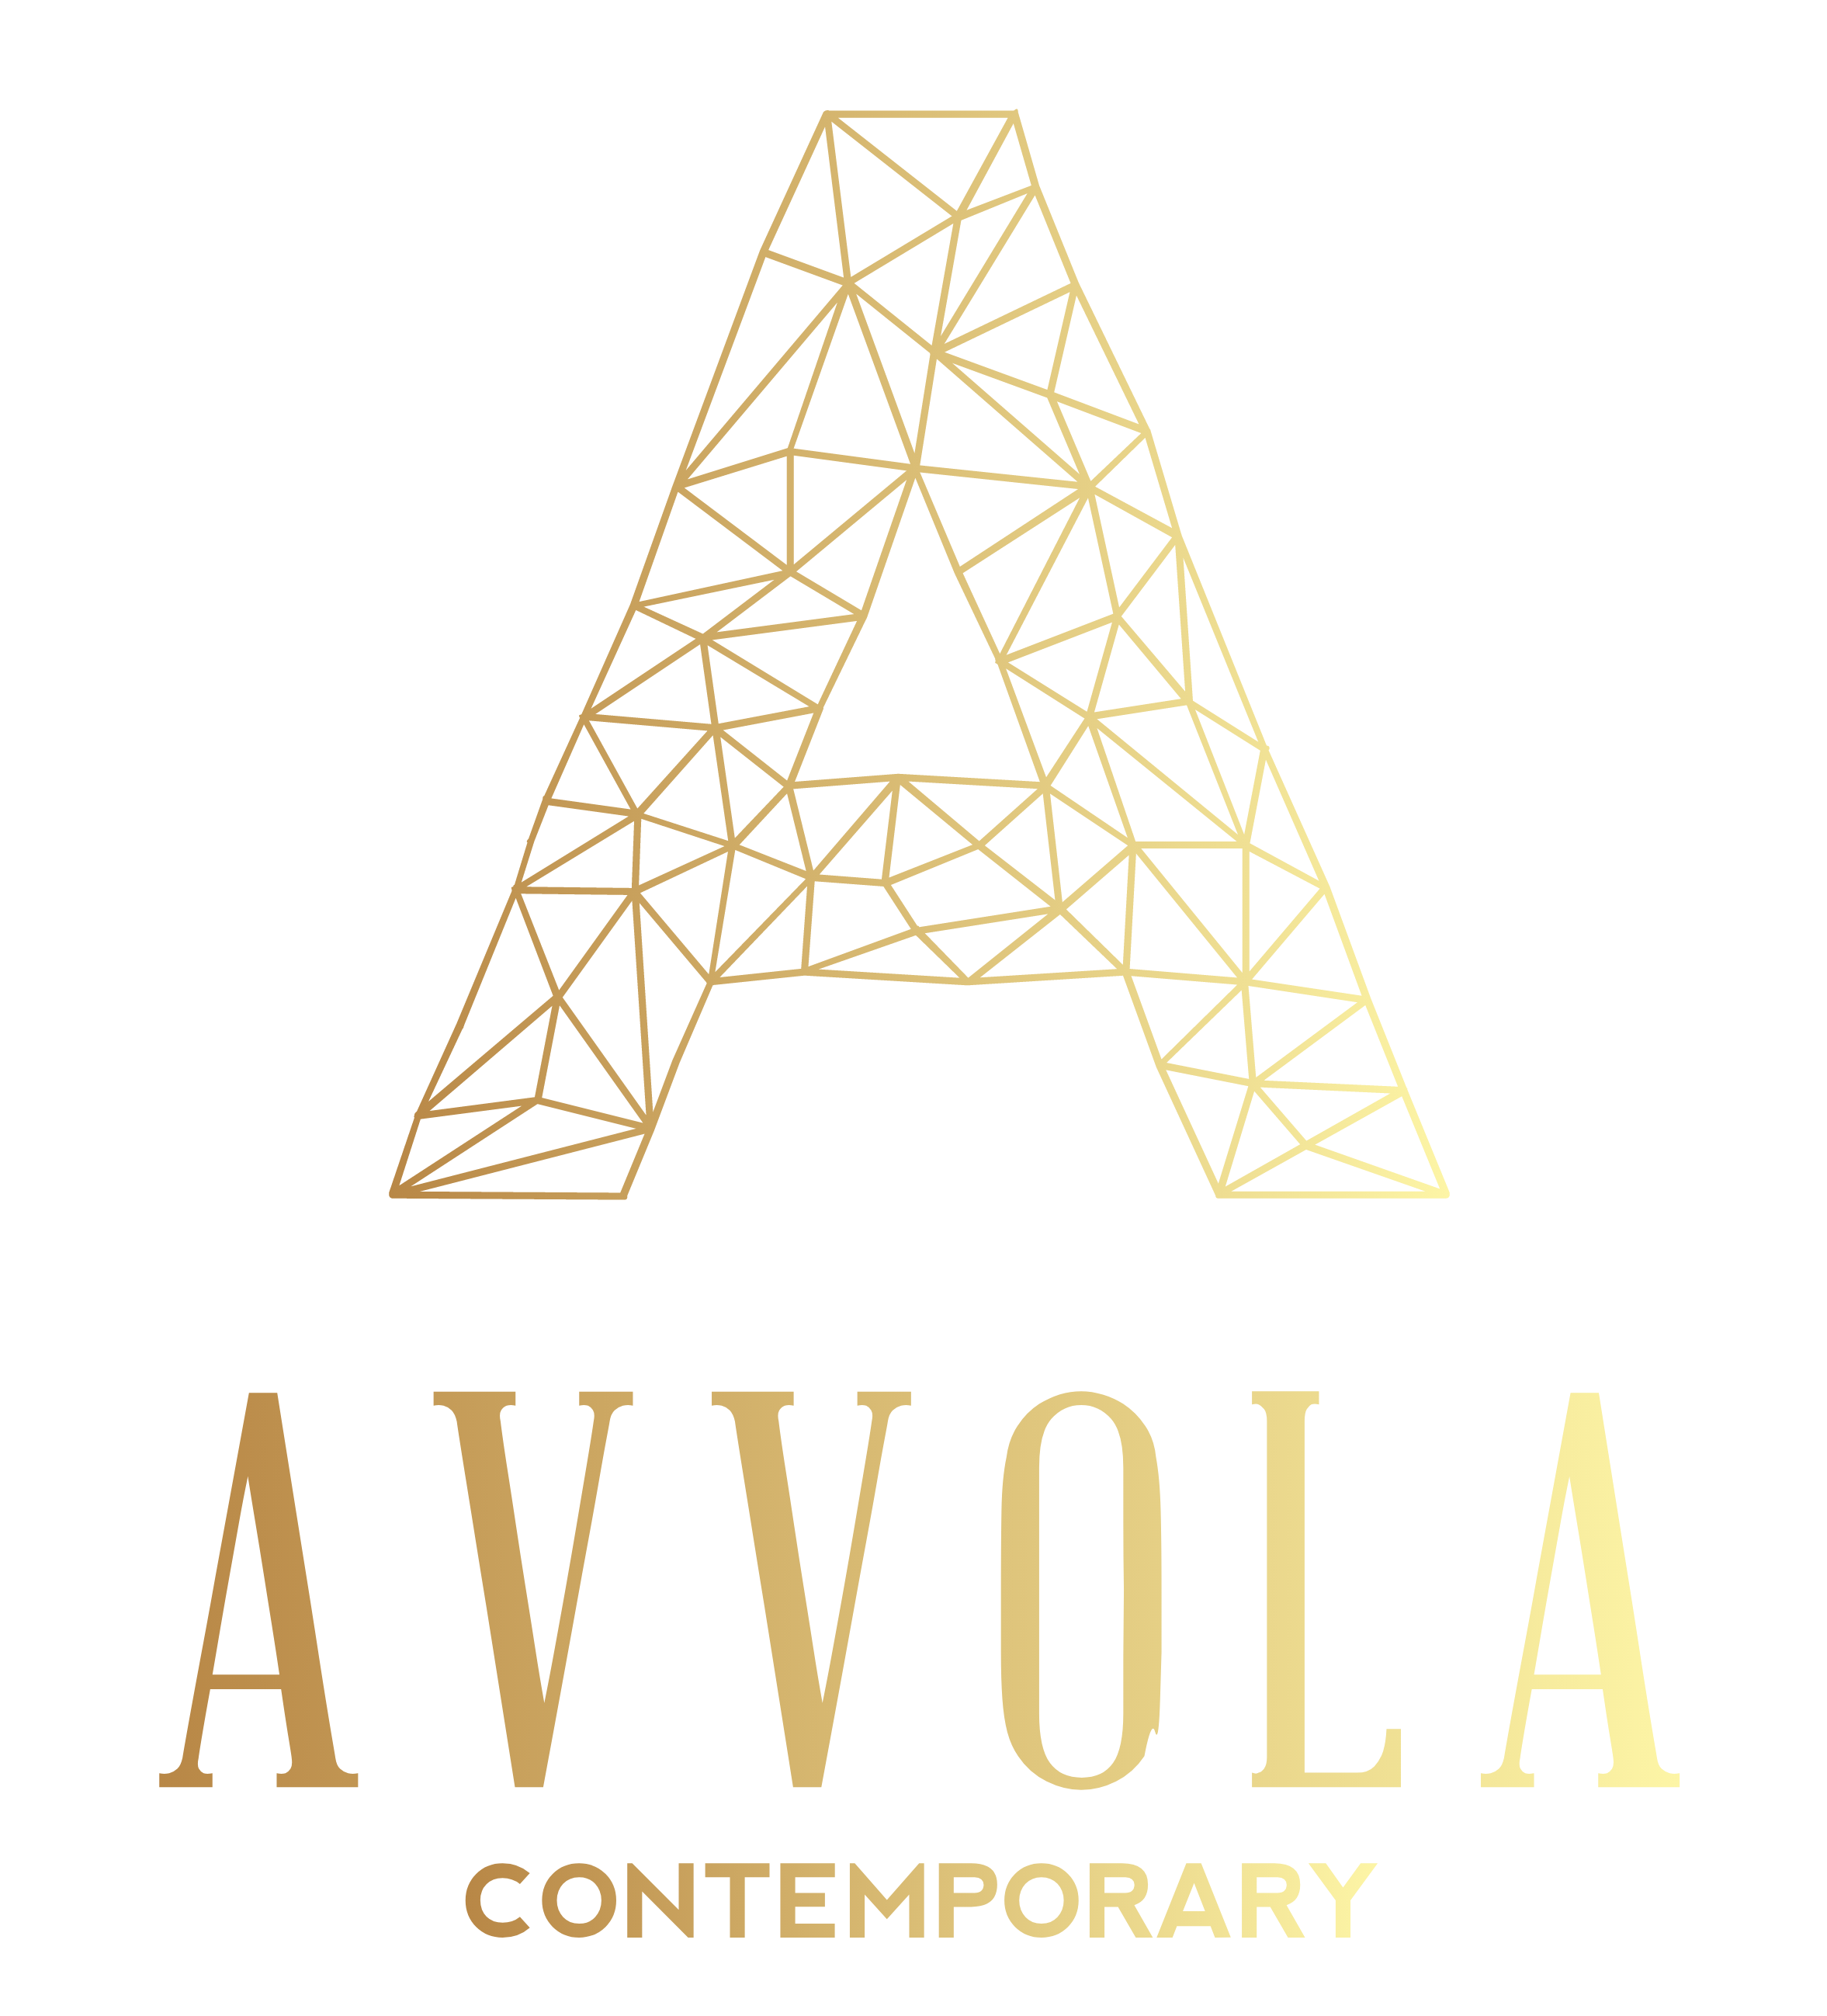 Avvola Contemporary